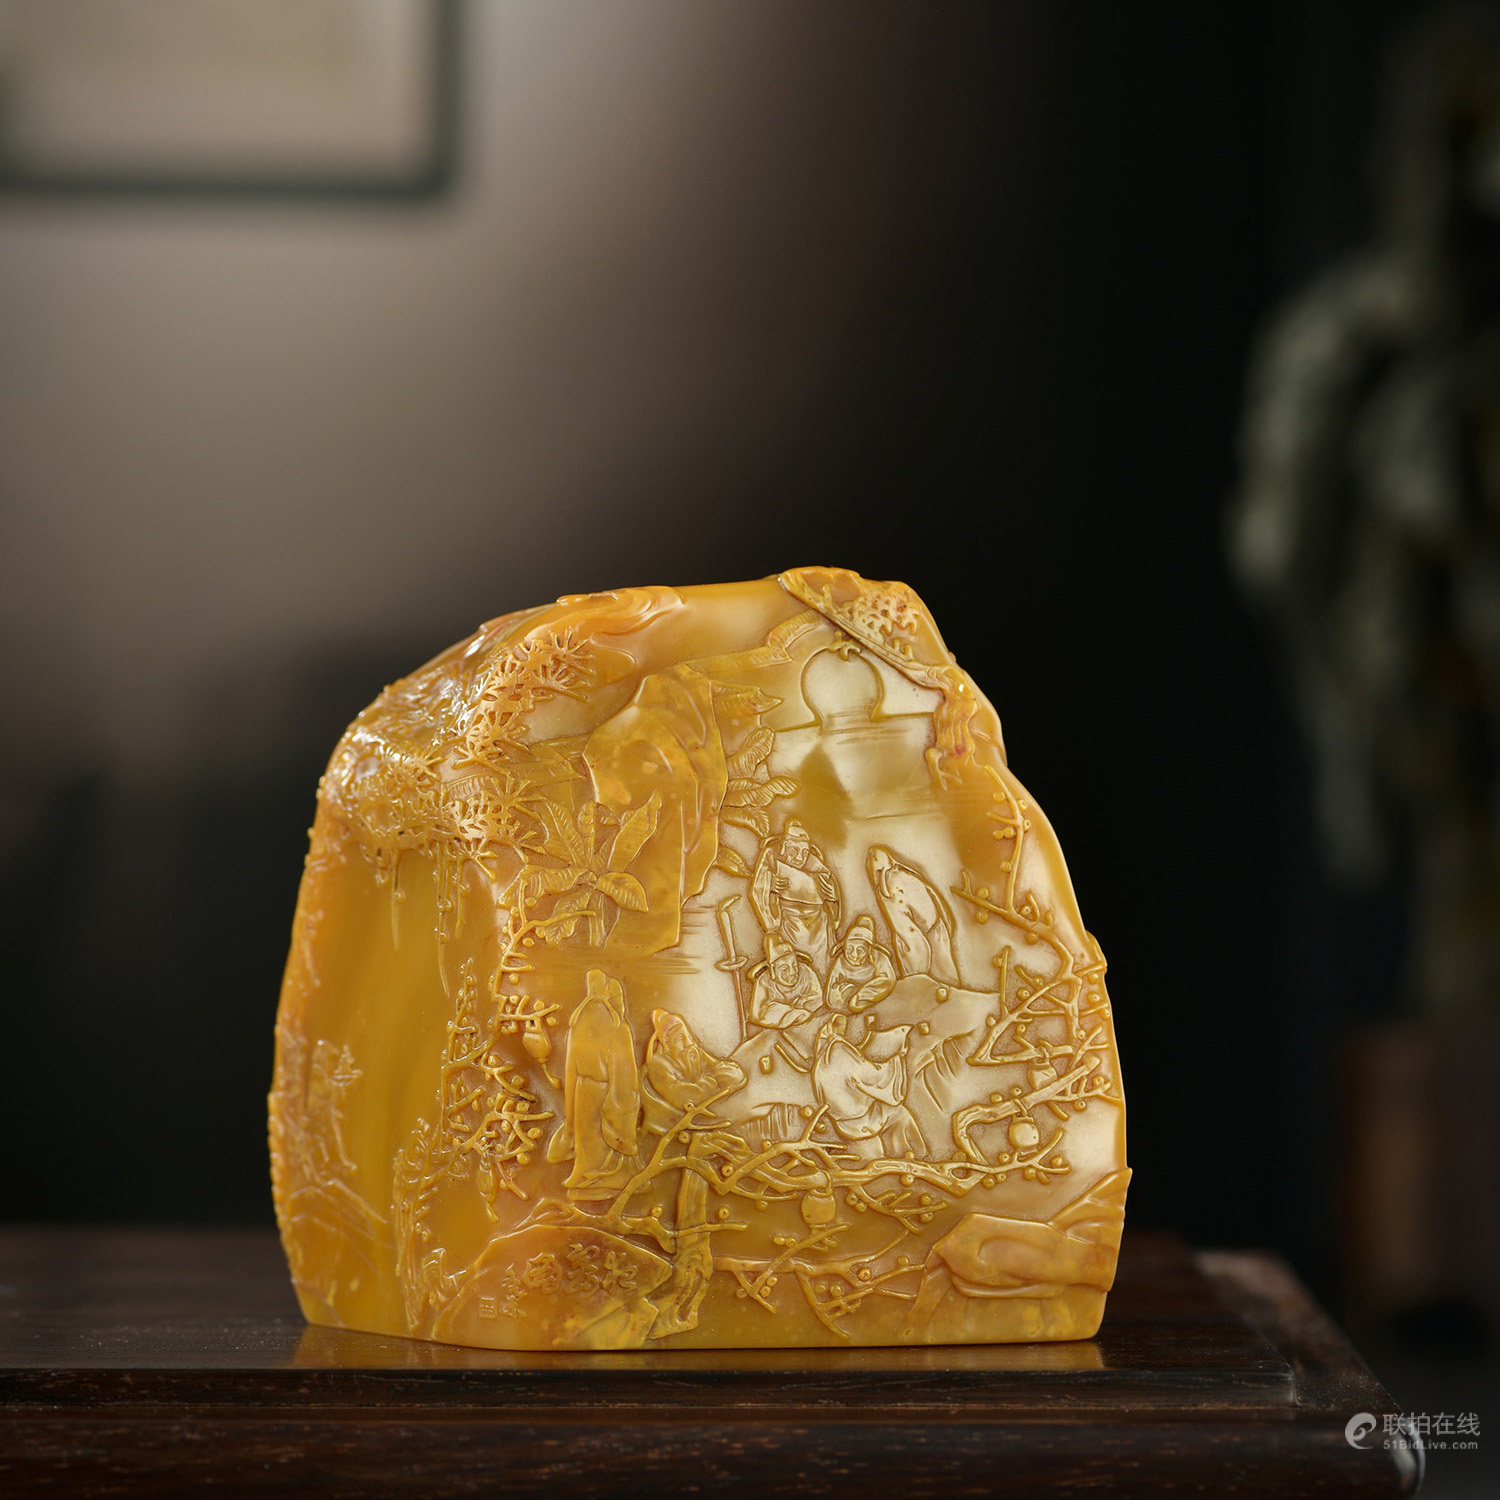 典藏级寿山石雕珍品为主角，福建东南2022秋拍精彩呈现.联拍动态